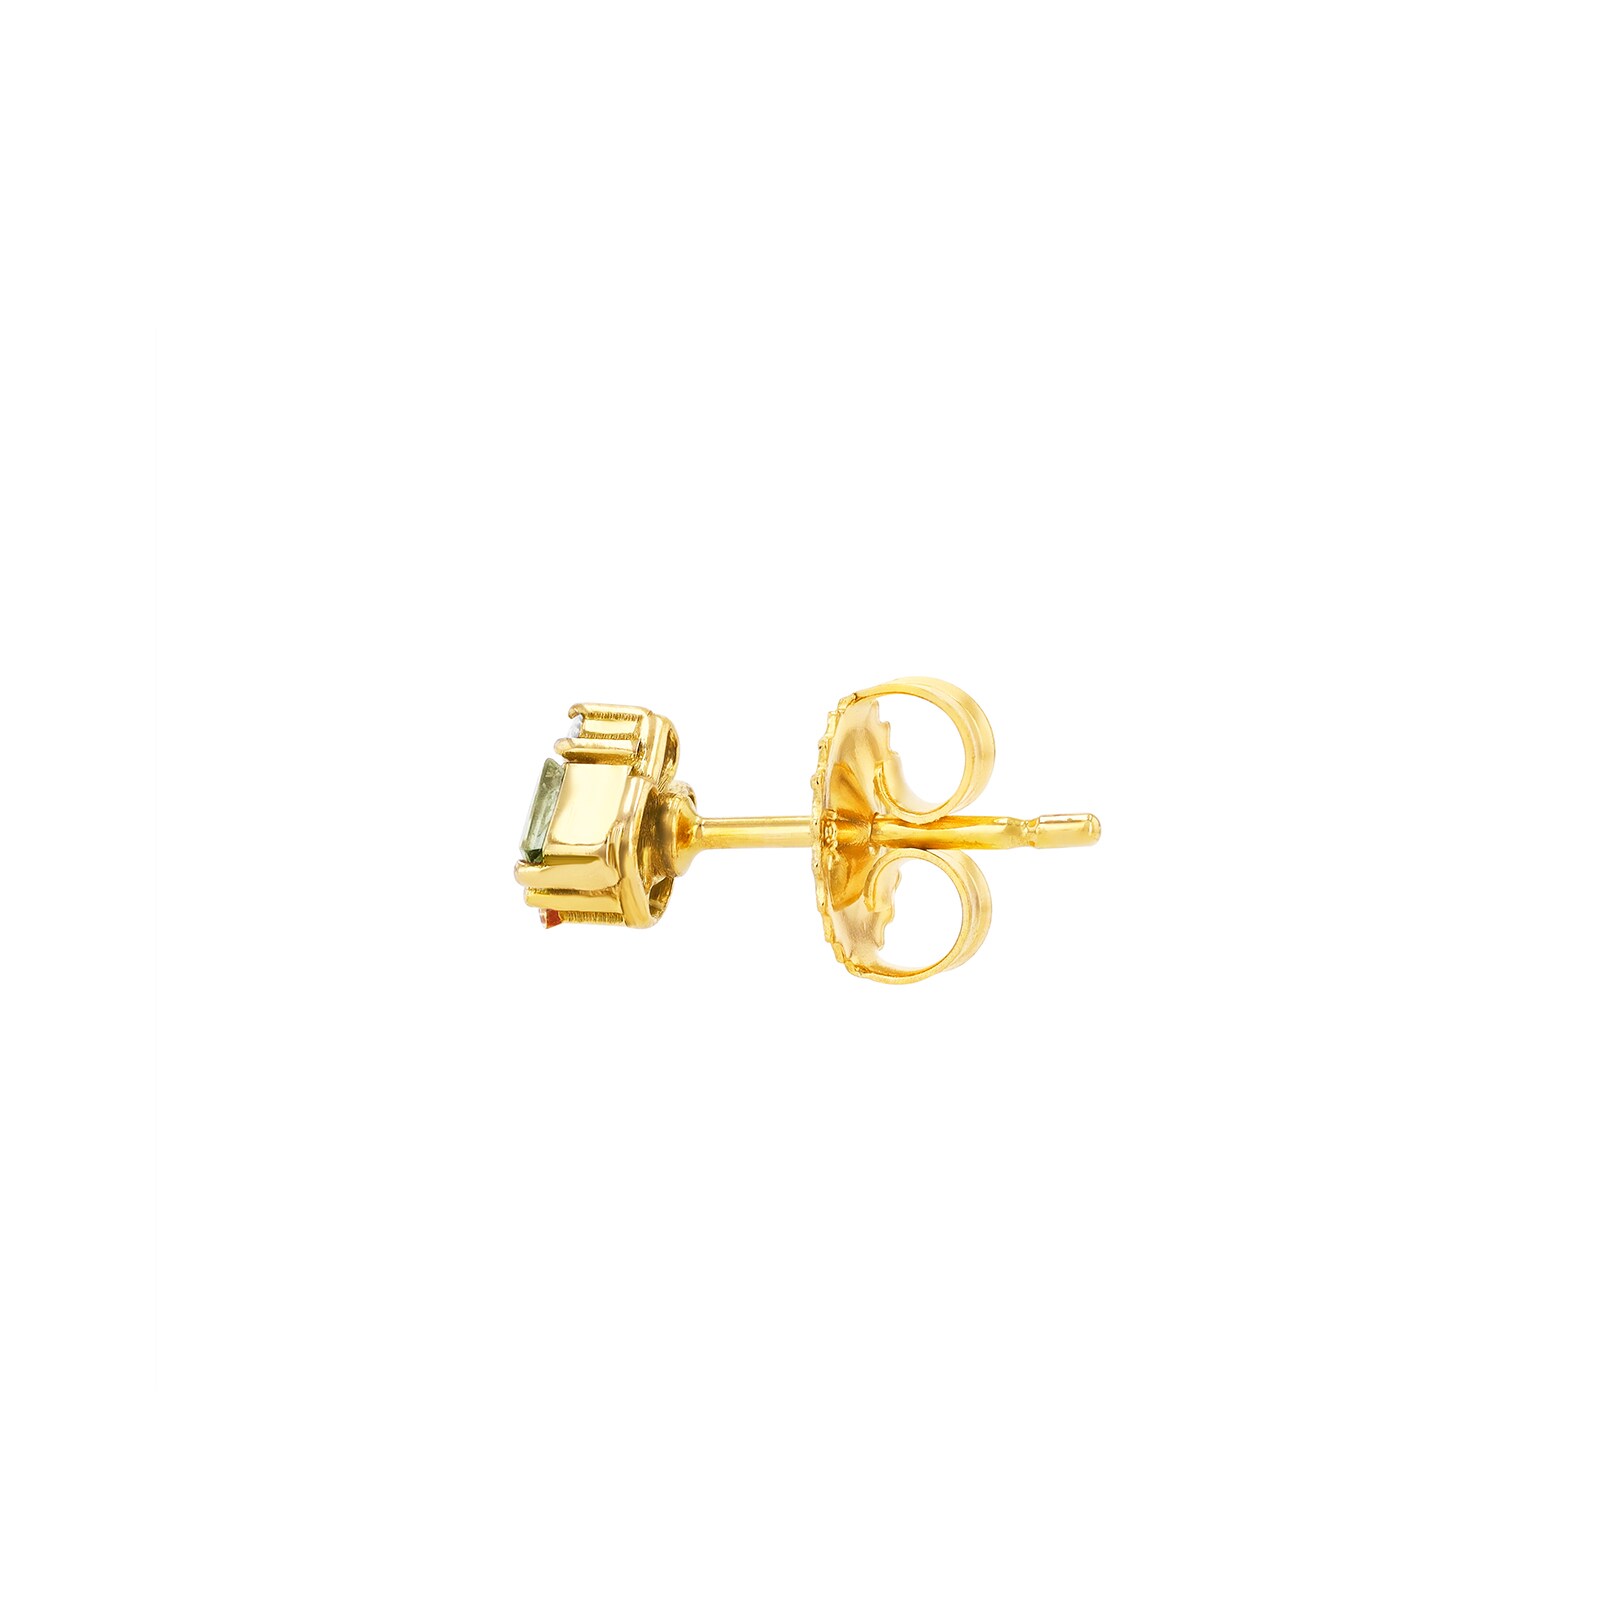 Buy Revere 9ct Gold Plated Sterling Silver Heart Earrings | Womens earrings  | Argos